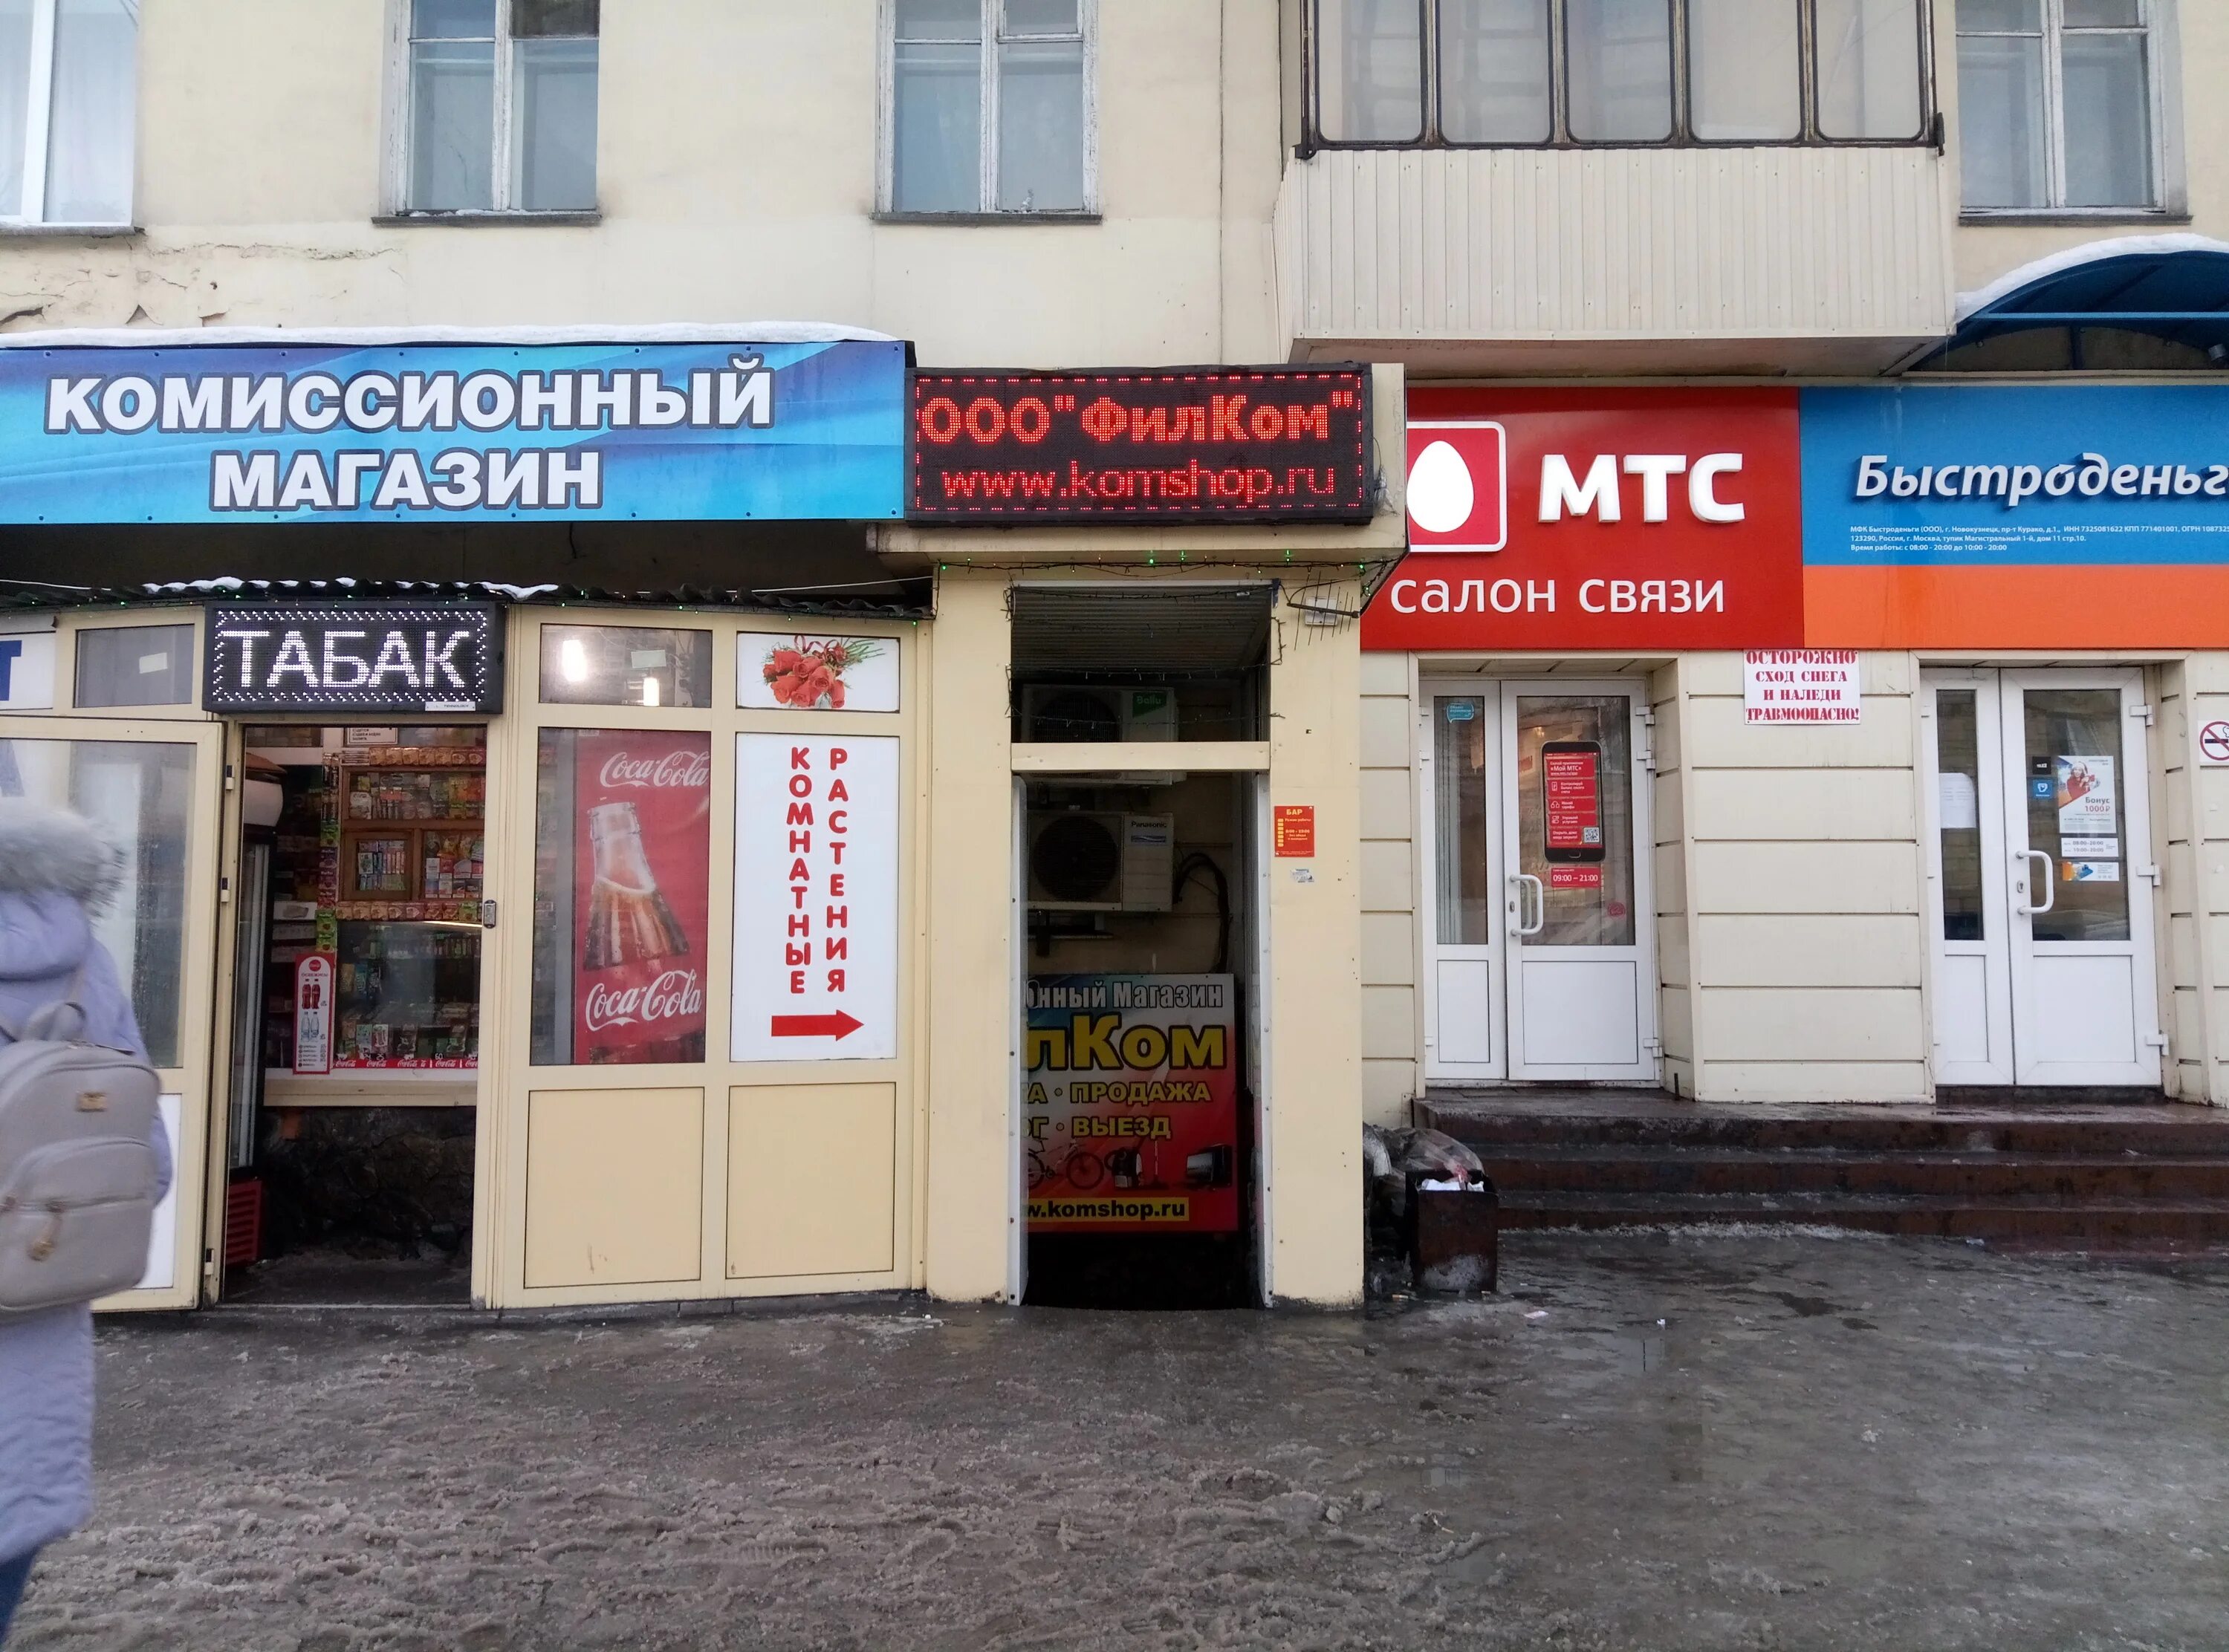 Комиссионный магазин в новокузнецке